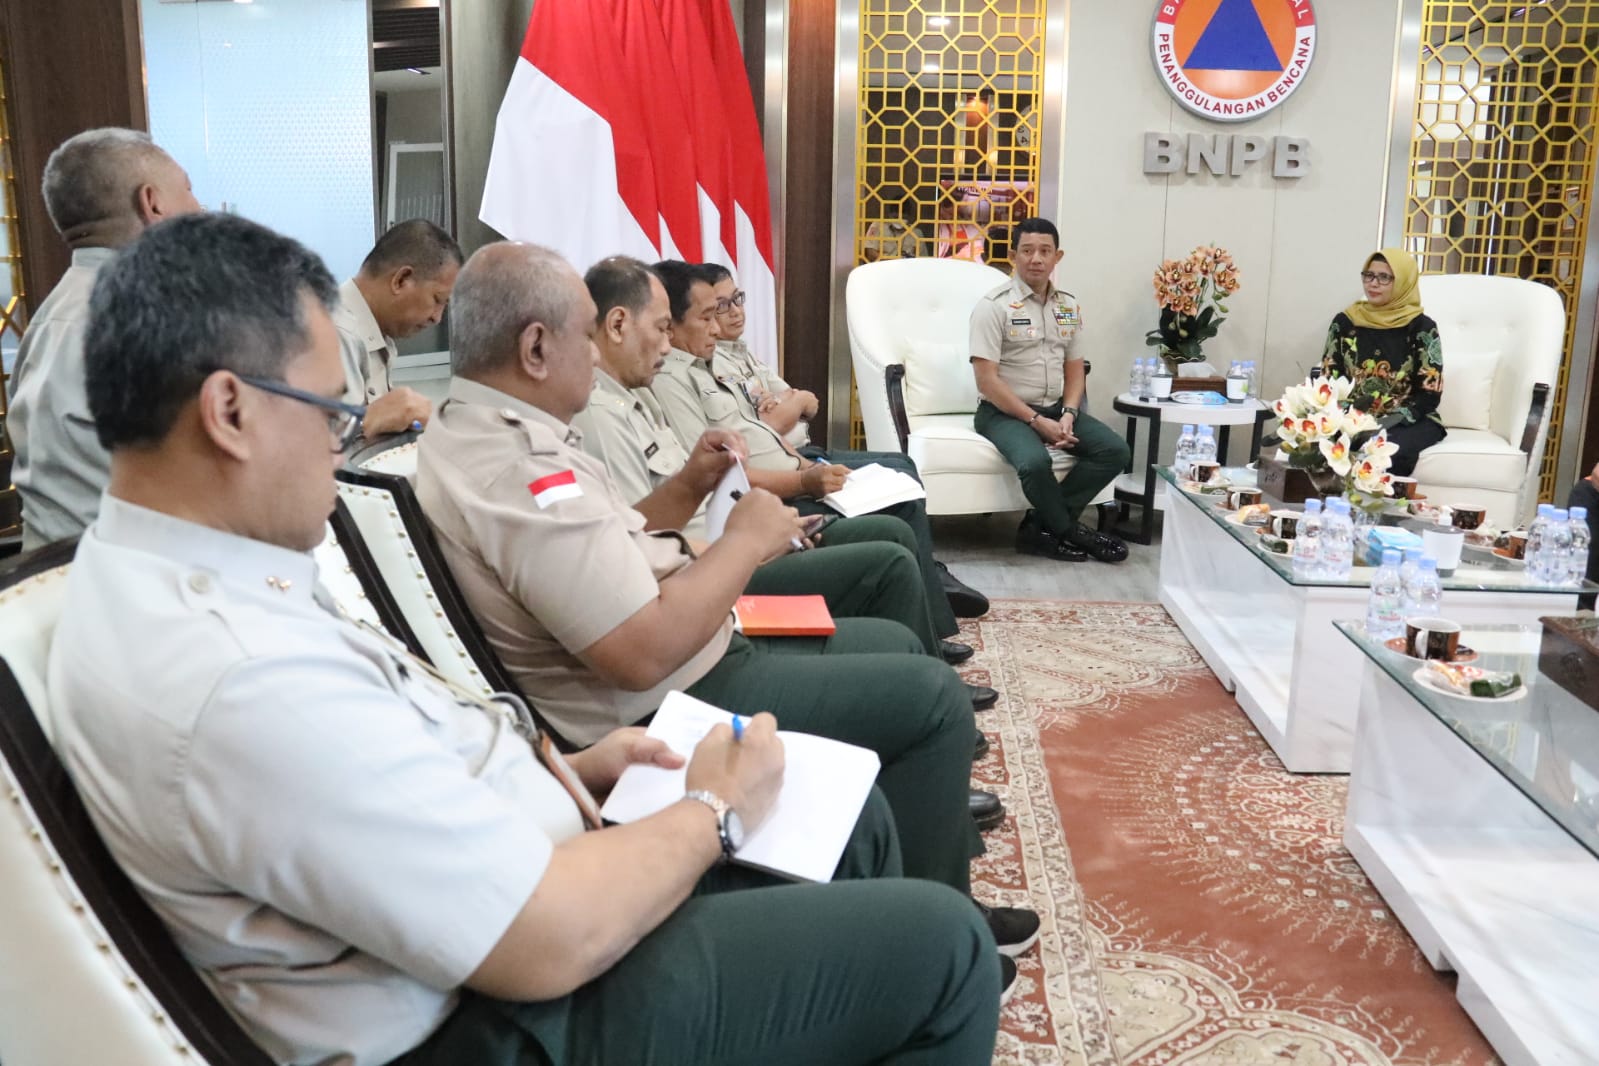 Kepala Badan Nasional Penanggulangan Bencana (BNPB) Letjen TNI Suharyanto beserta jajaran pejabat tinggi di lingkungan BNPB menerima Bupati Blitar Rini Syarifah di Gedung Graha BNPB, Jakarta, Senin (21/8).